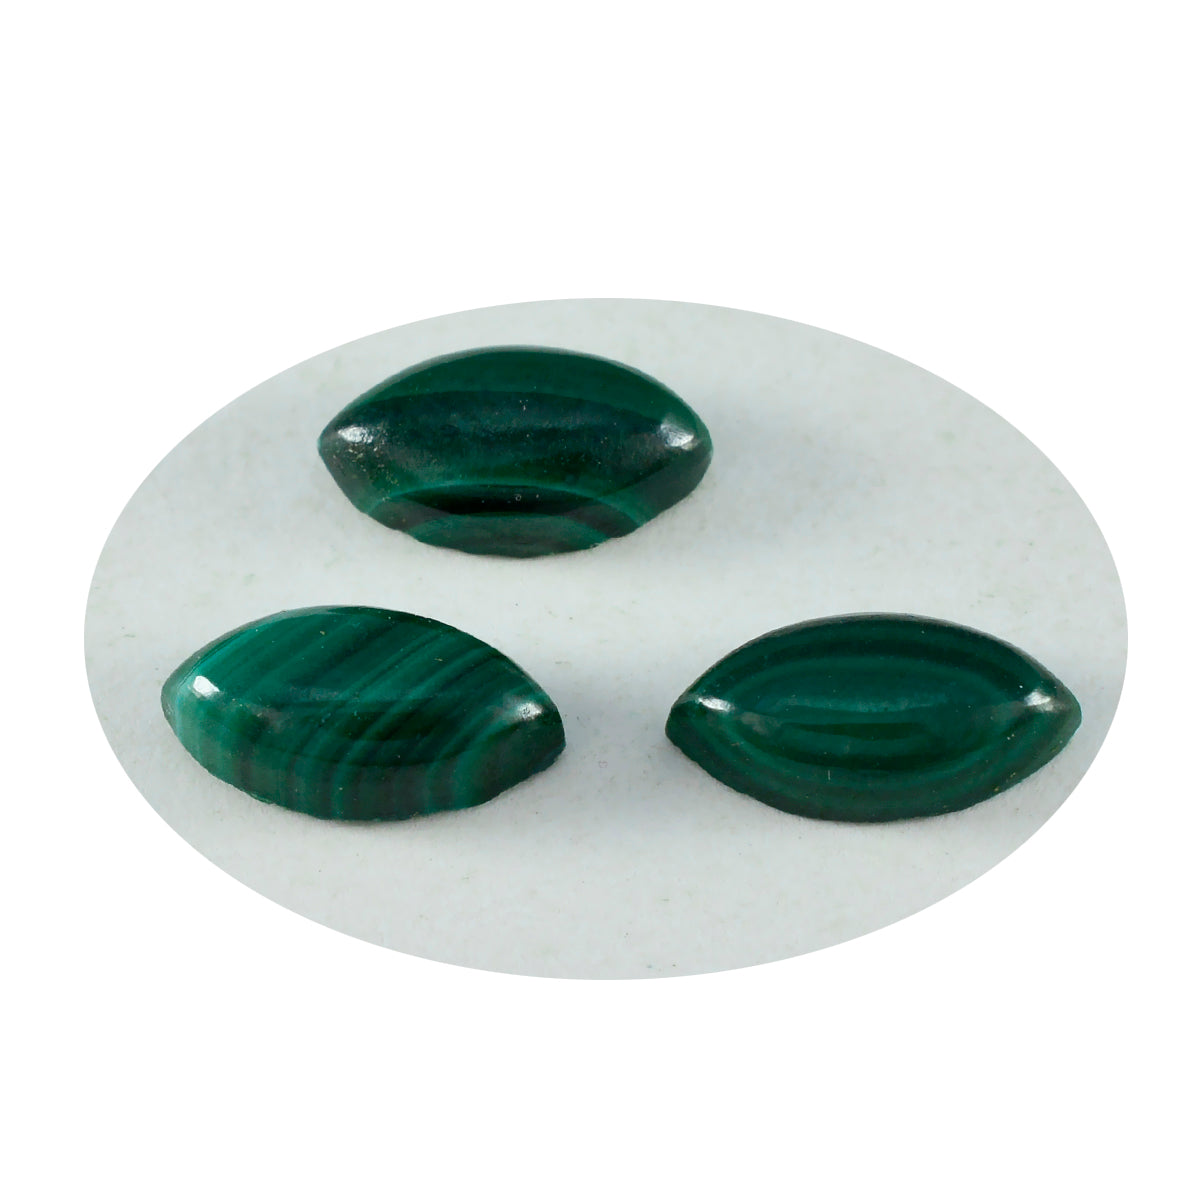 riyogems 1 шт. зеленый малахитовый кабошон 7x14 мм в форме маркизы прекрасный качественный камень